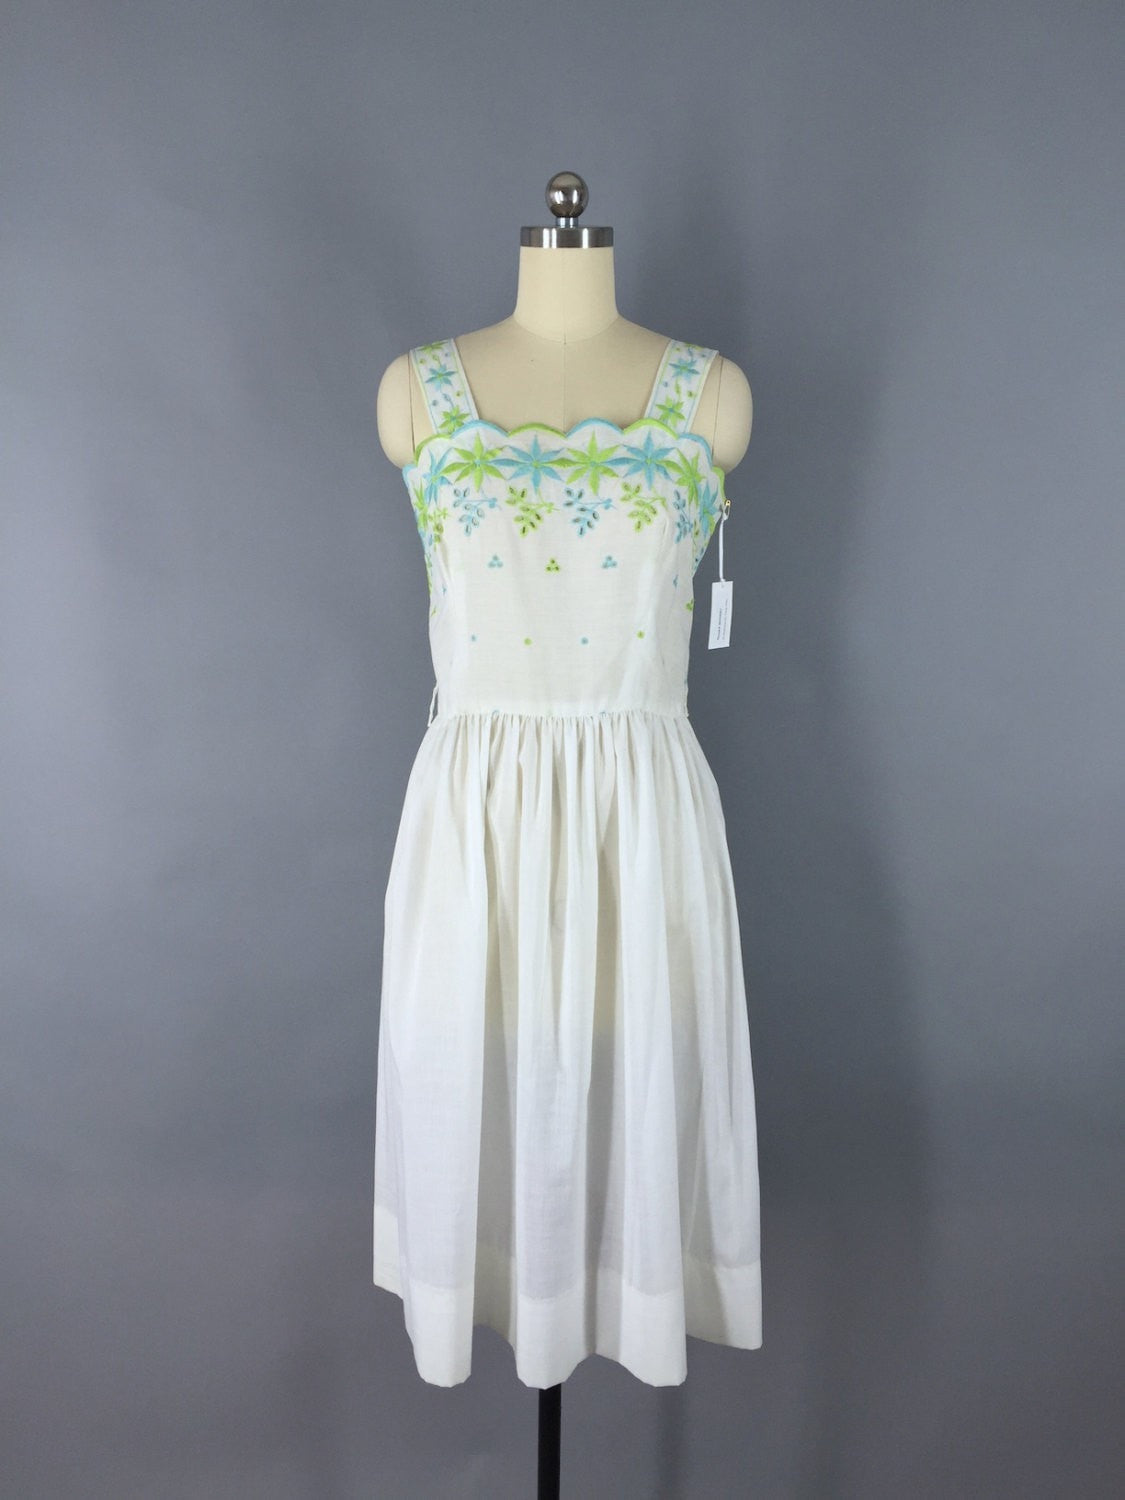 Vintage 1970s Dress / White Cotton Eyelet Dress - ThisBlueBird